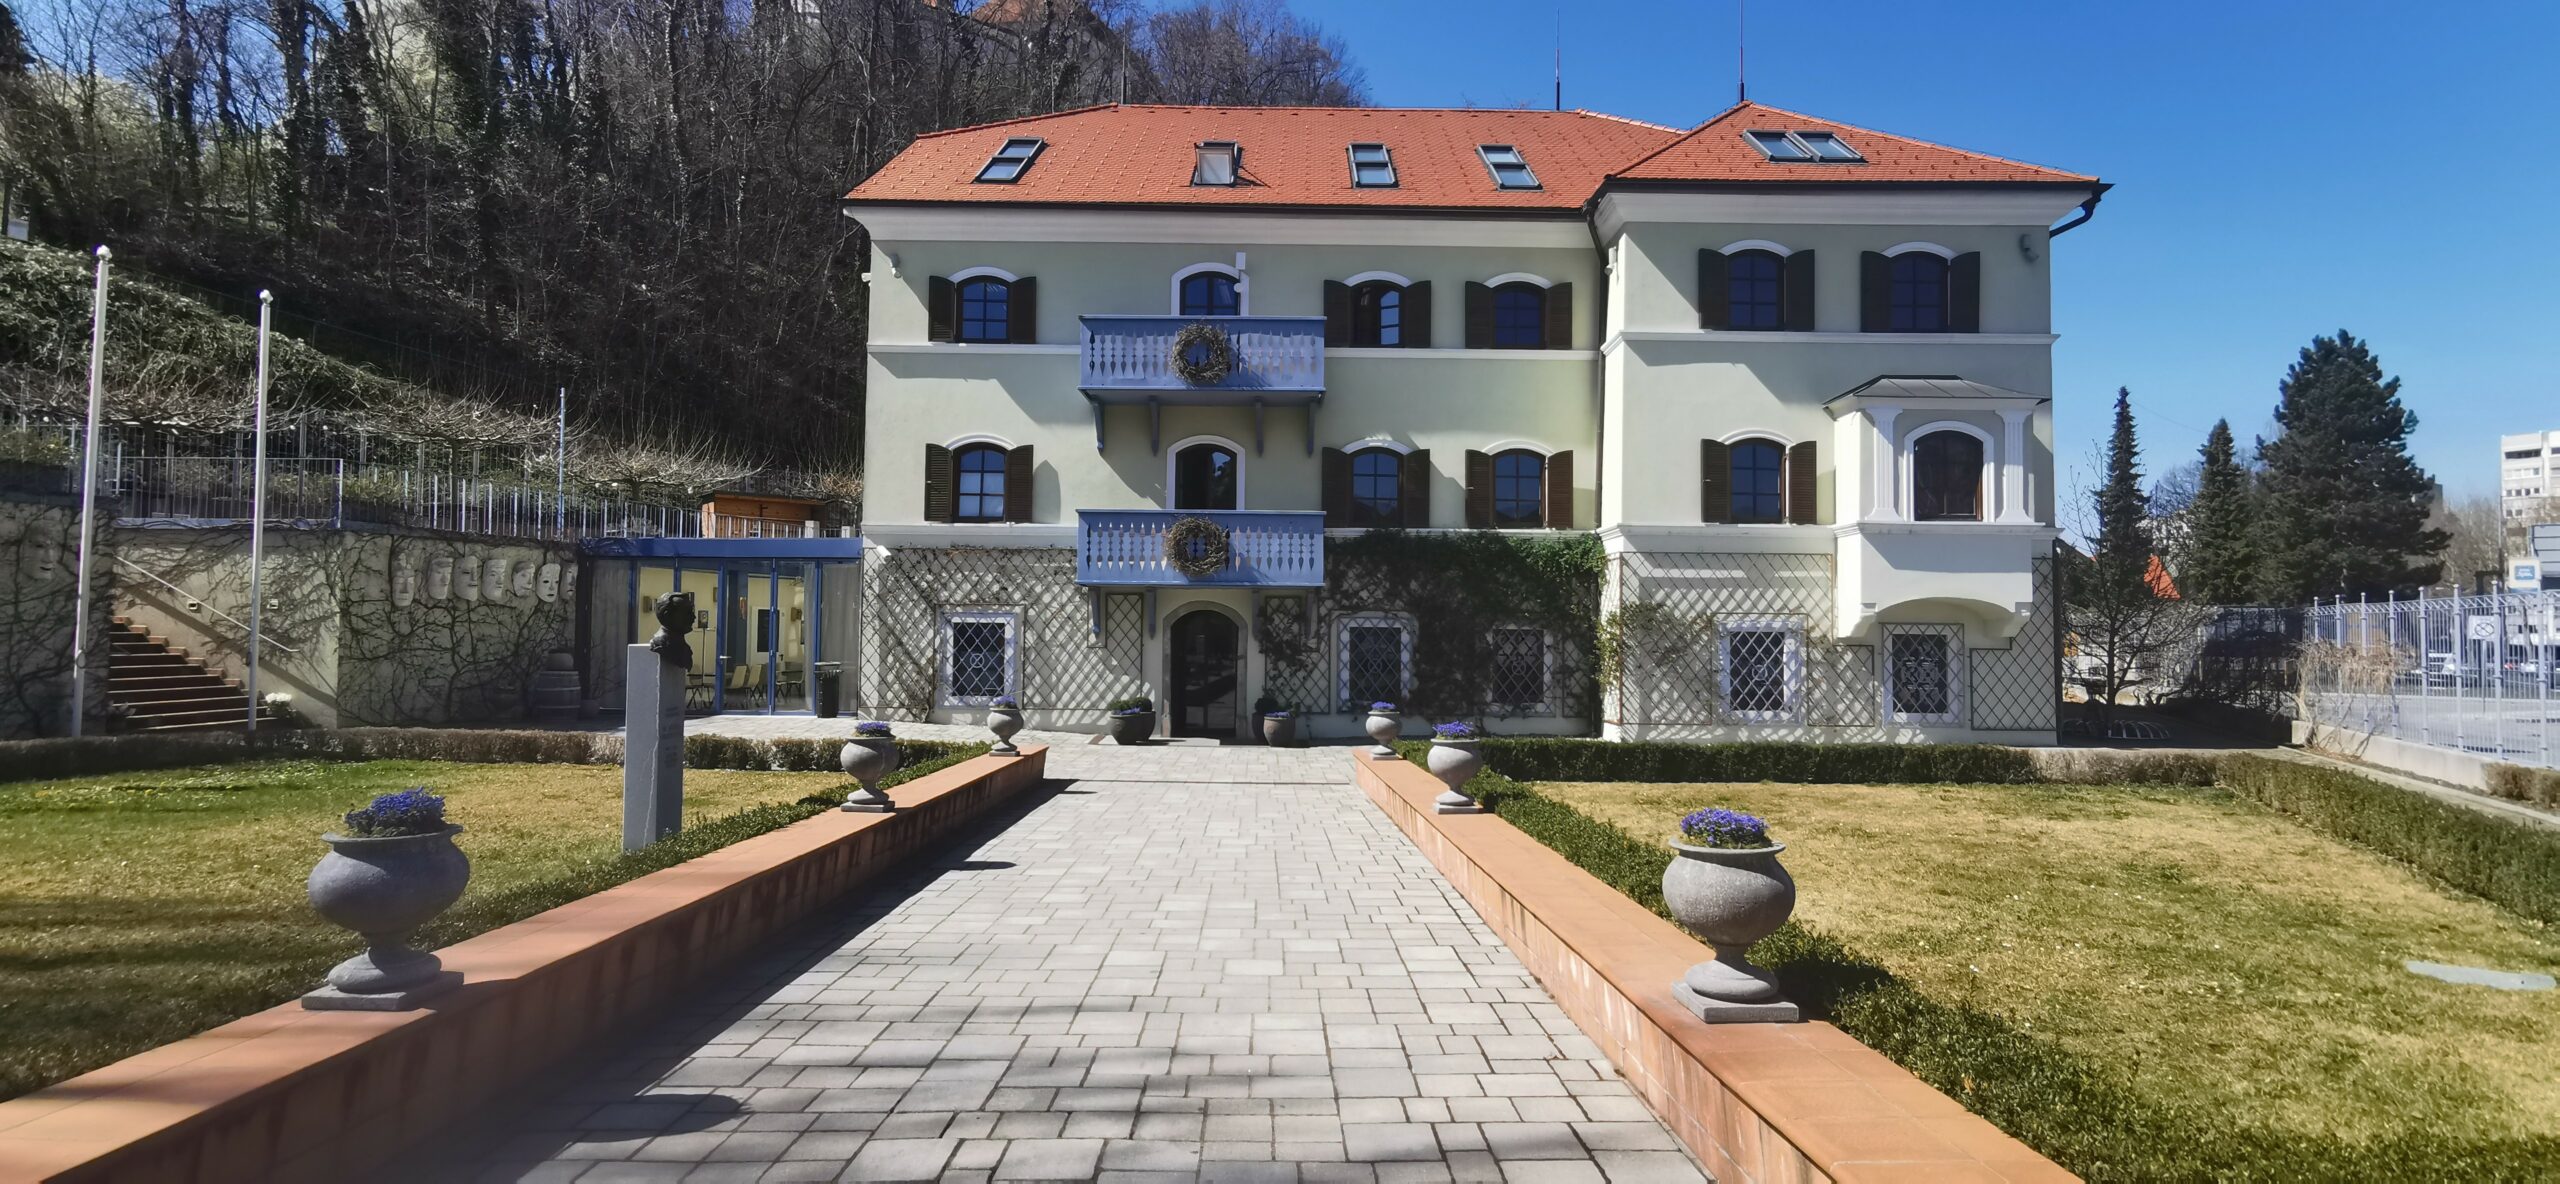 Turistično informacijski center Velenje ponovno odprt vse dni v letu